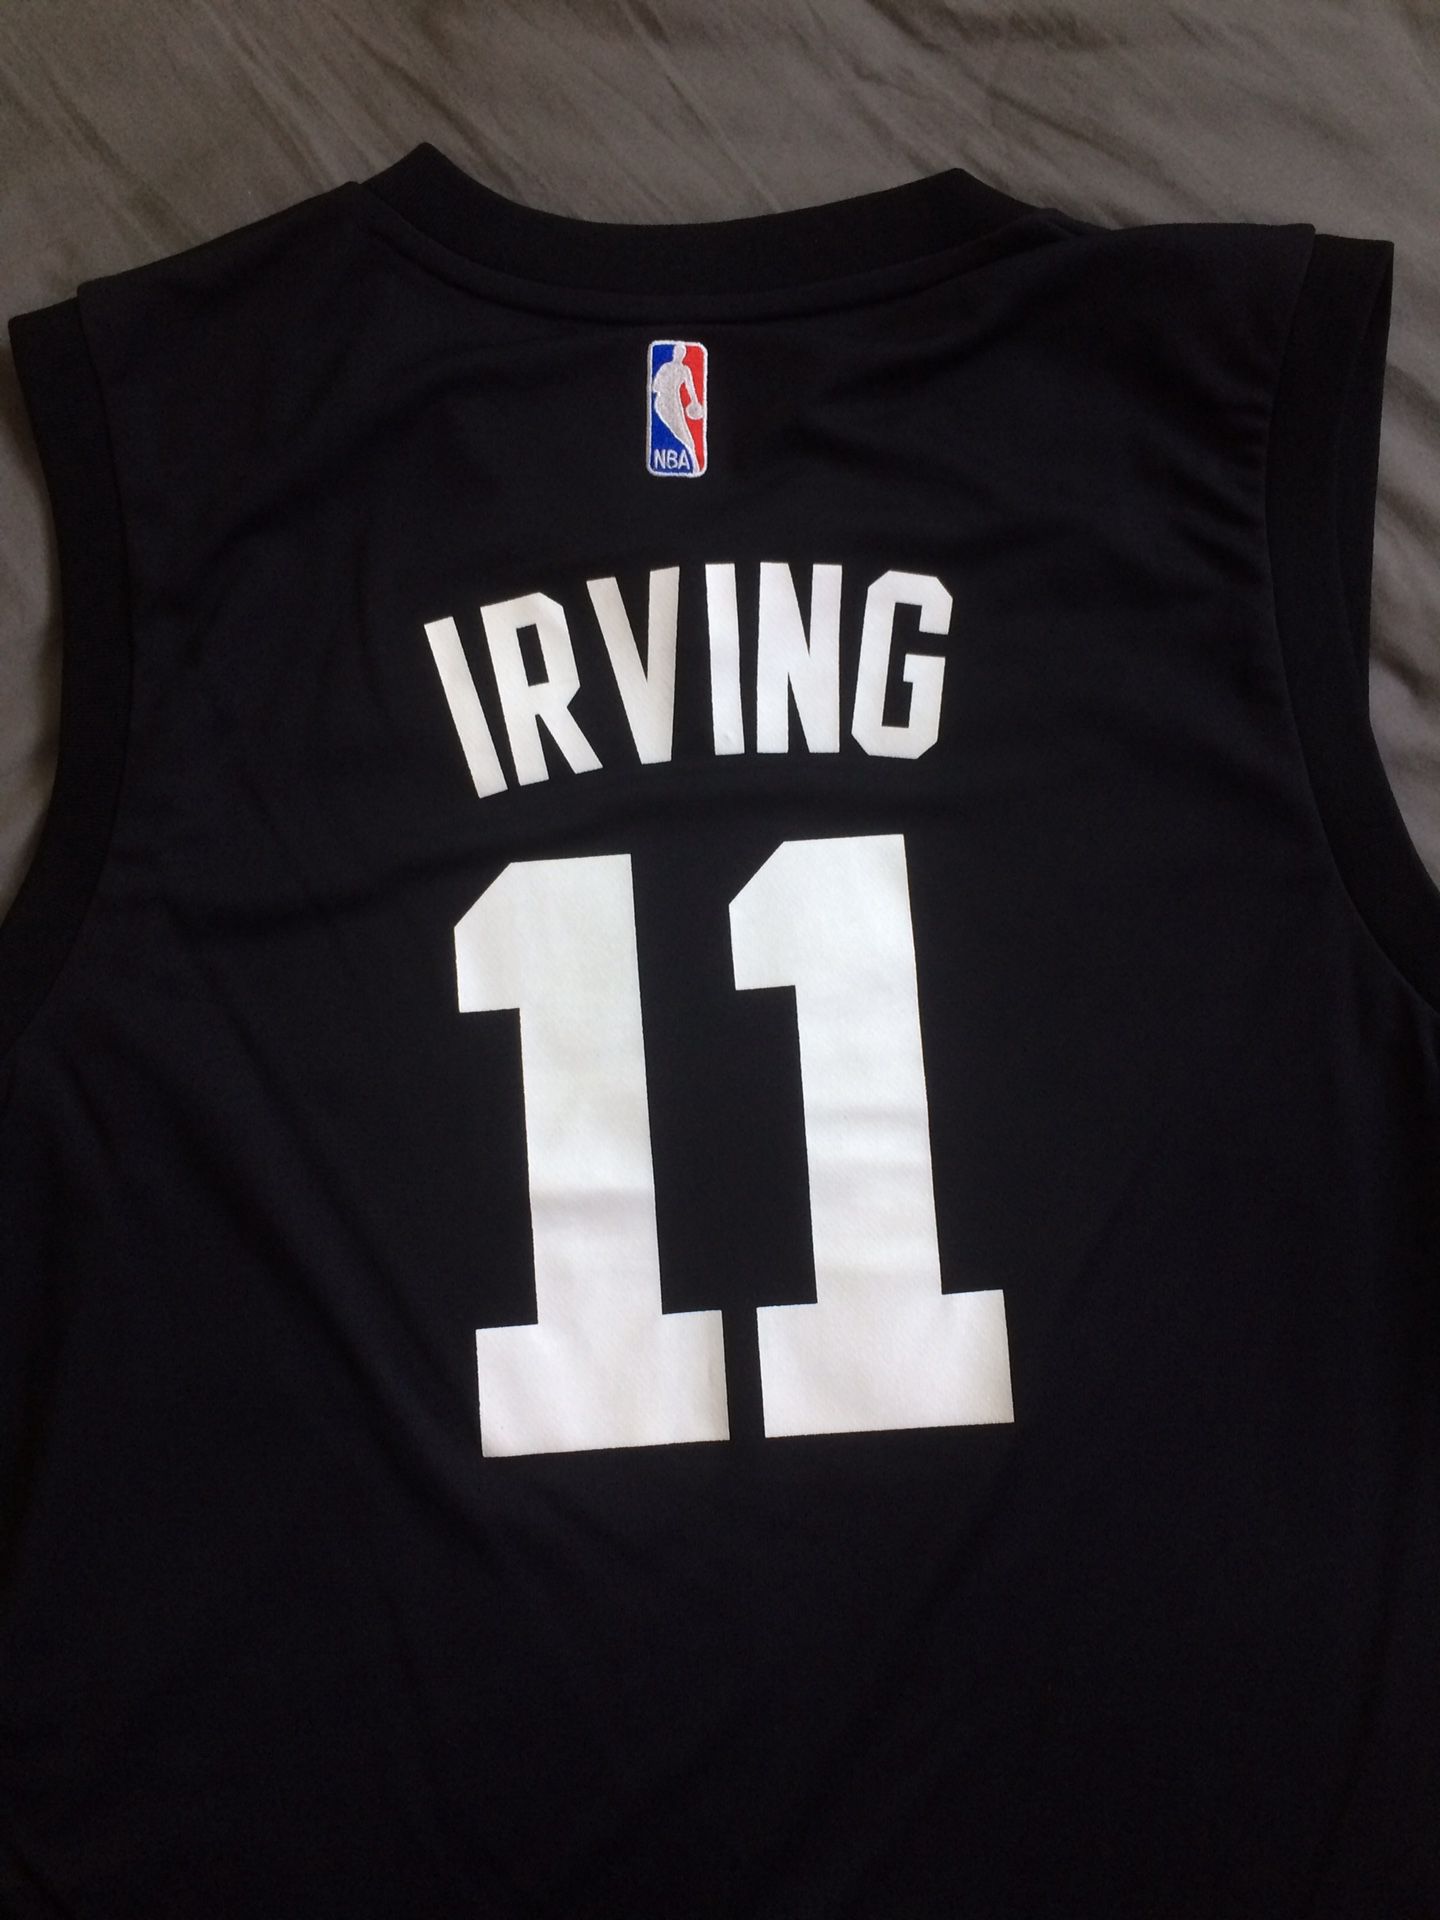 Kyrie Irving Black Boston Celtics Jersey size large